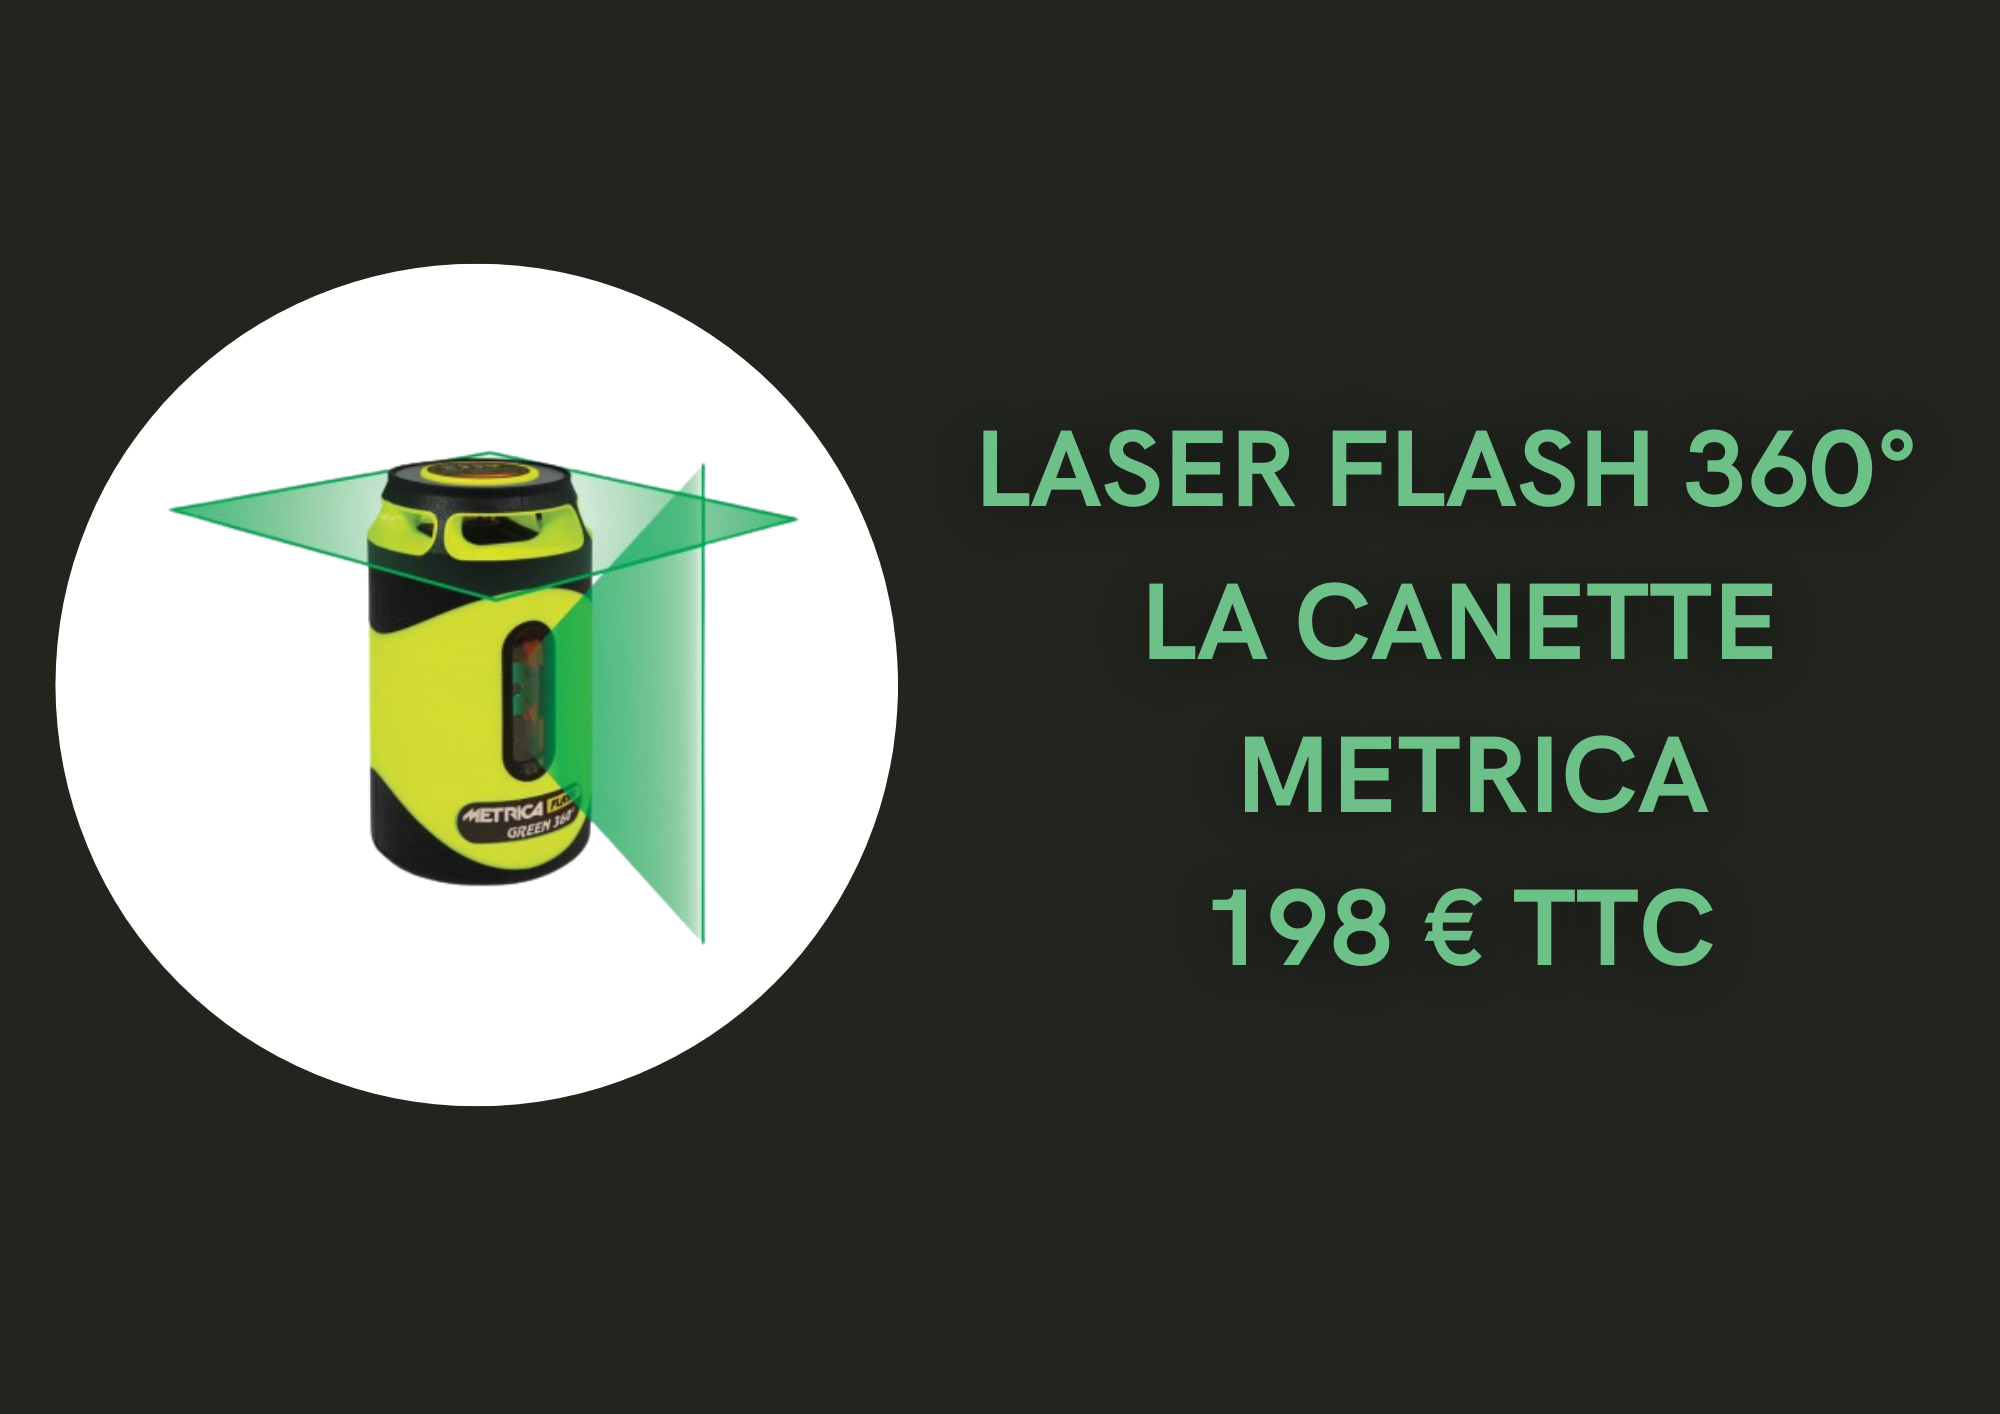 Laser metrica flash